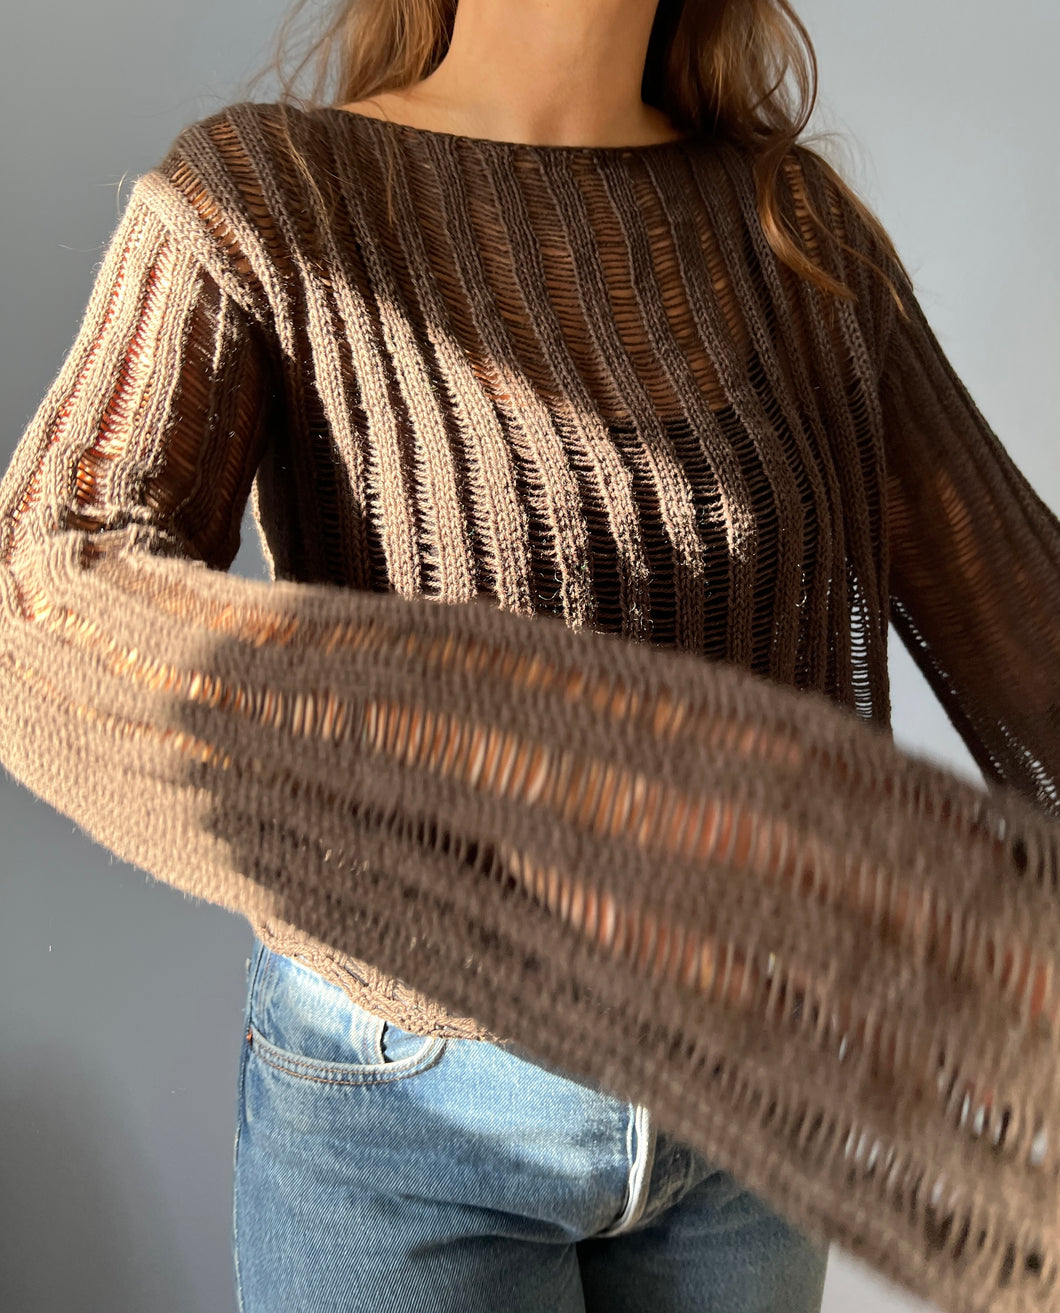 Deima's air blouse - knitting pattern (dansk)